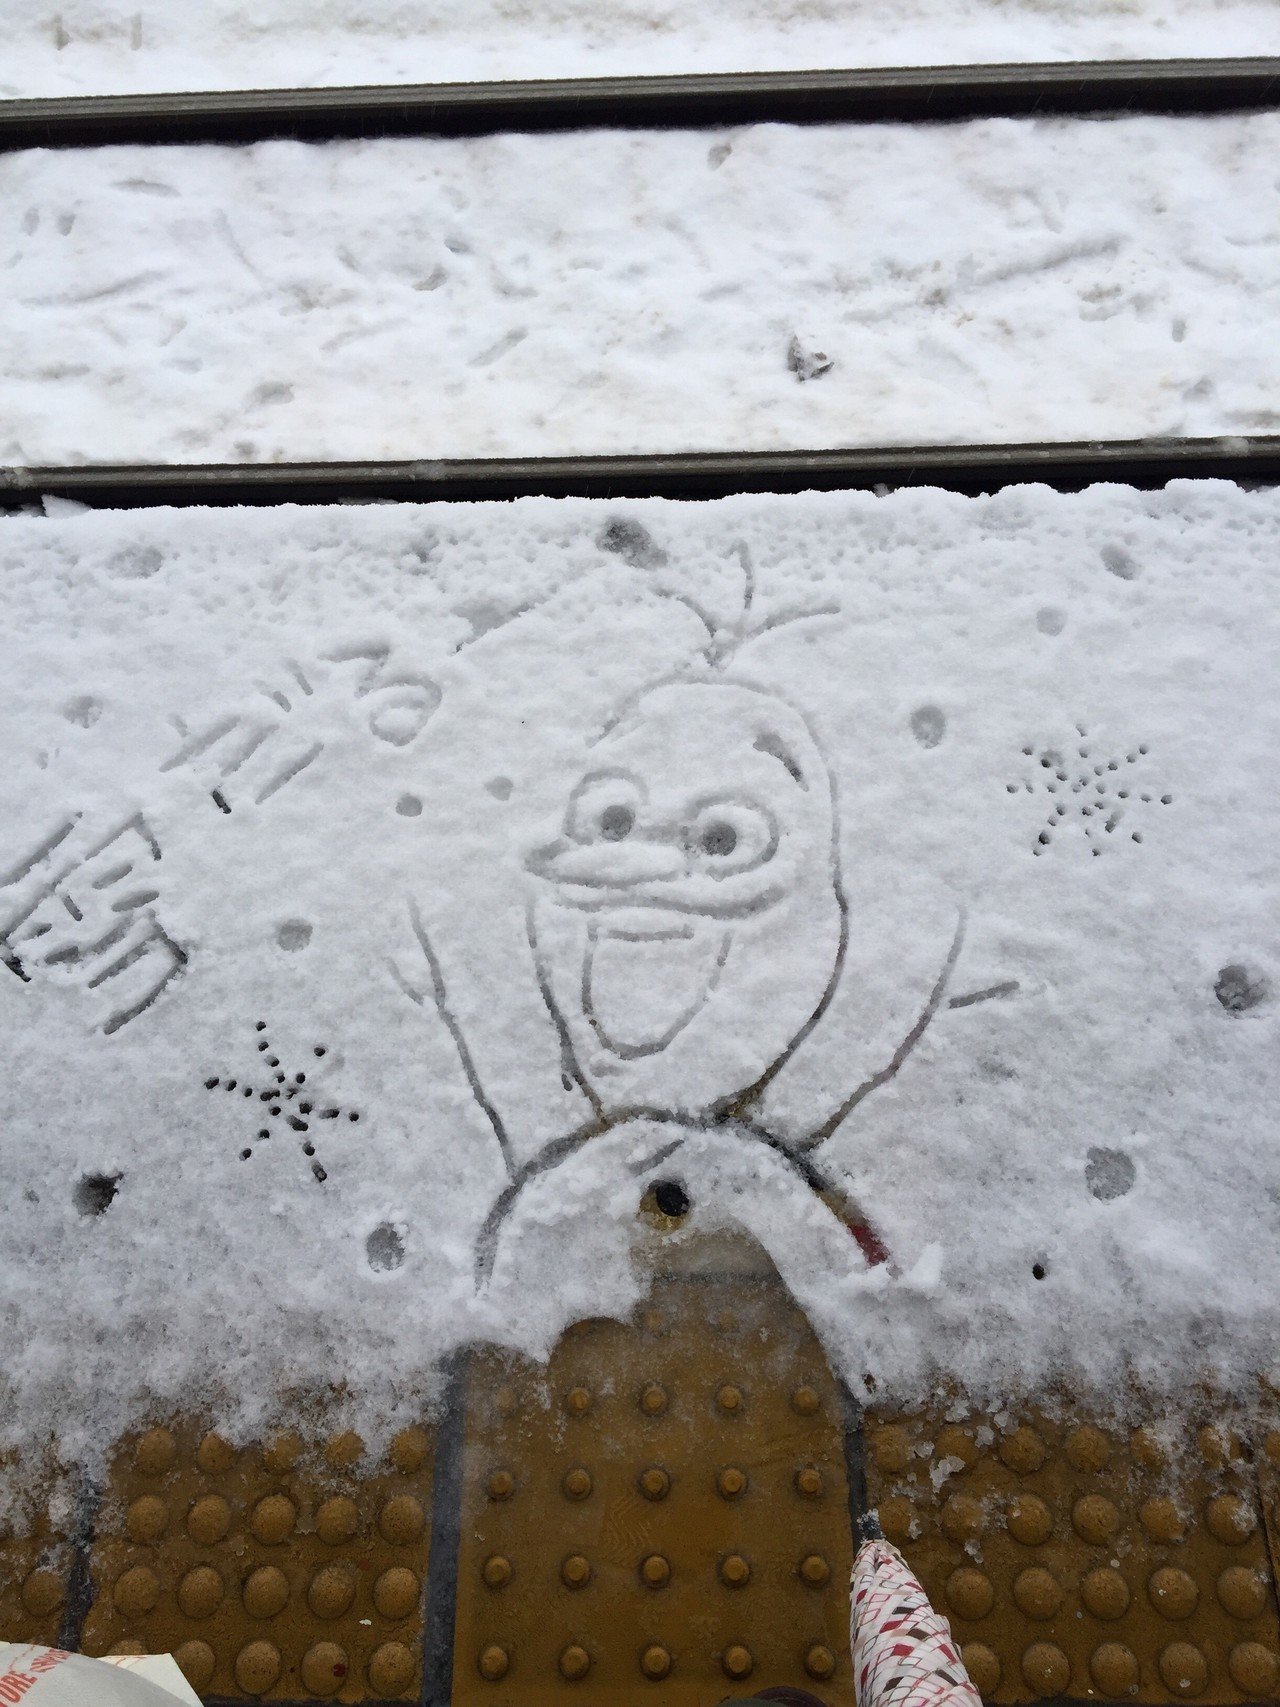 1時間駅で待たされたのでオラフ描いて遊ぶ 雪だるまつくーろー 数分後 電車来て 降りてきたおっさんにガン見されながら躊躇なく踏まれる 無念 Moca 萌香 イラスト Note